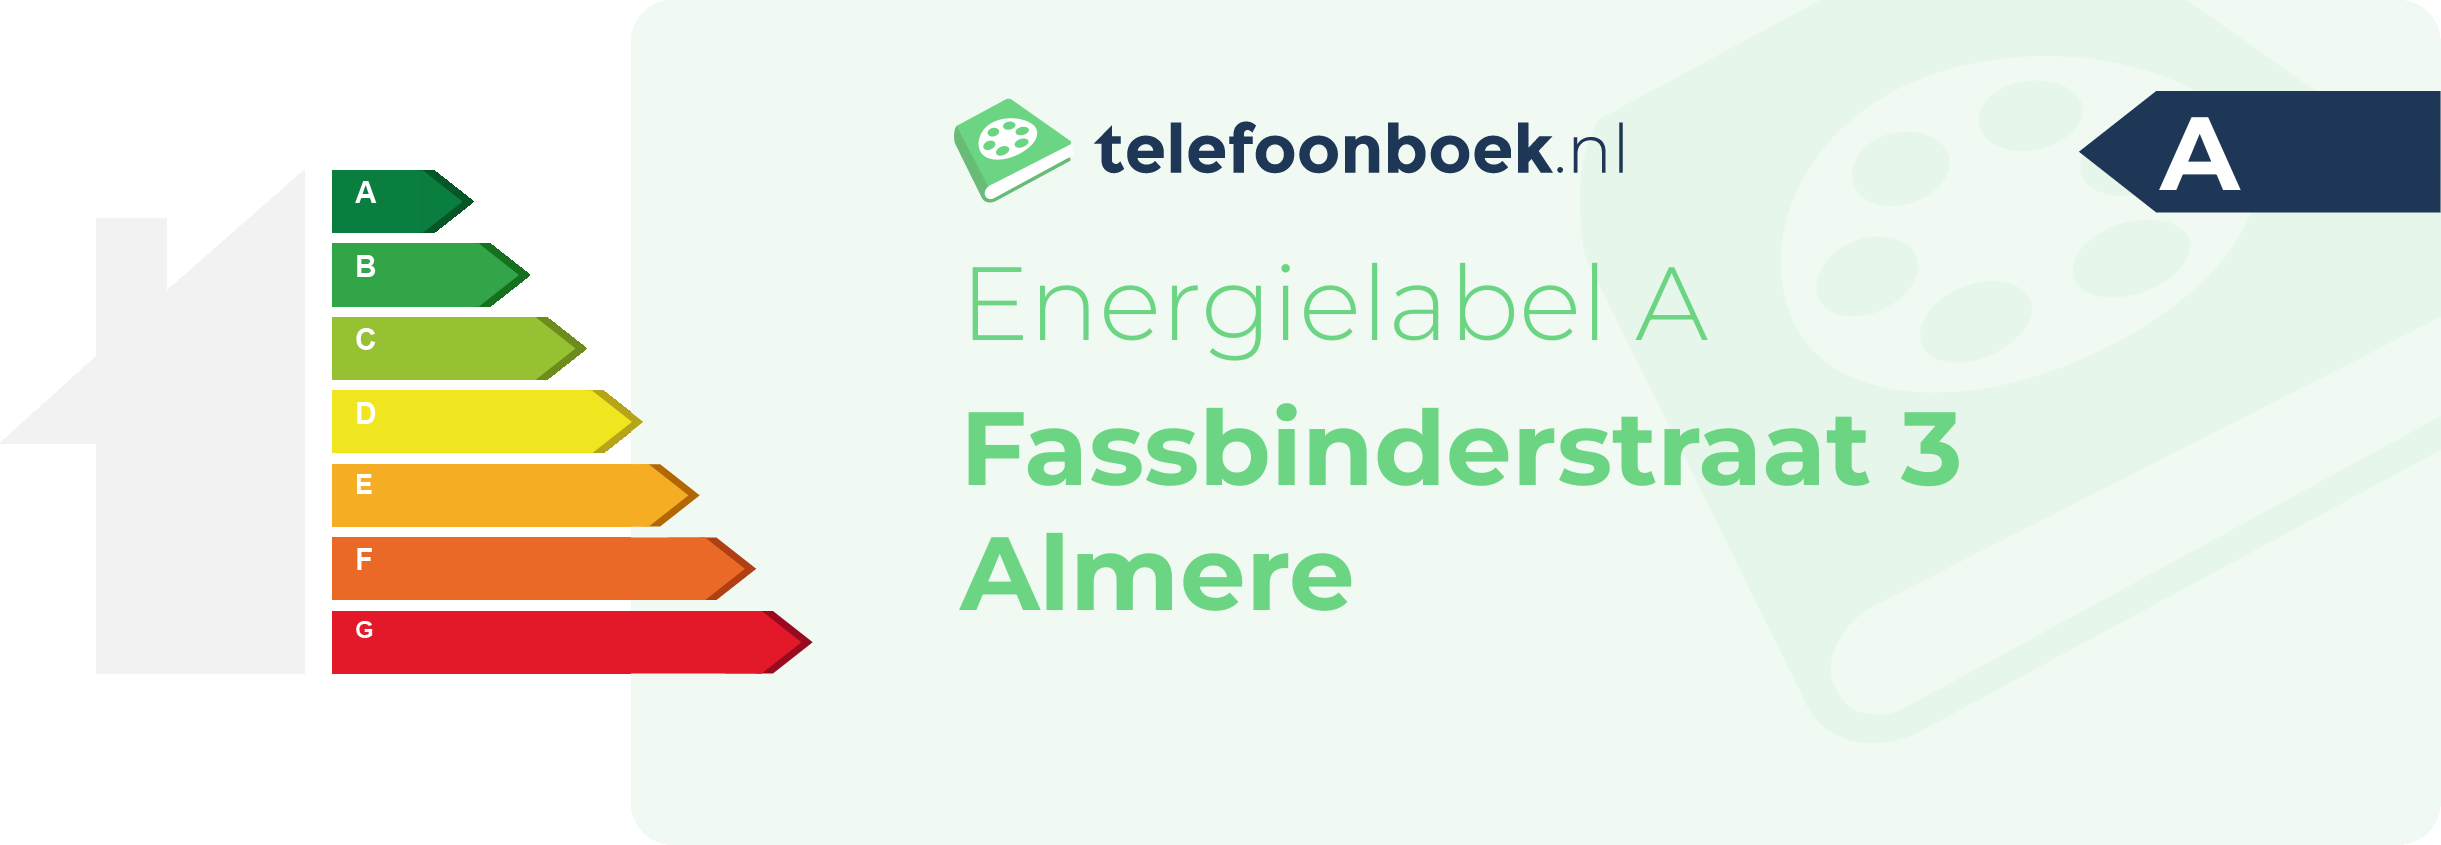 Energielabel Fassbinderstraat 3 Almere